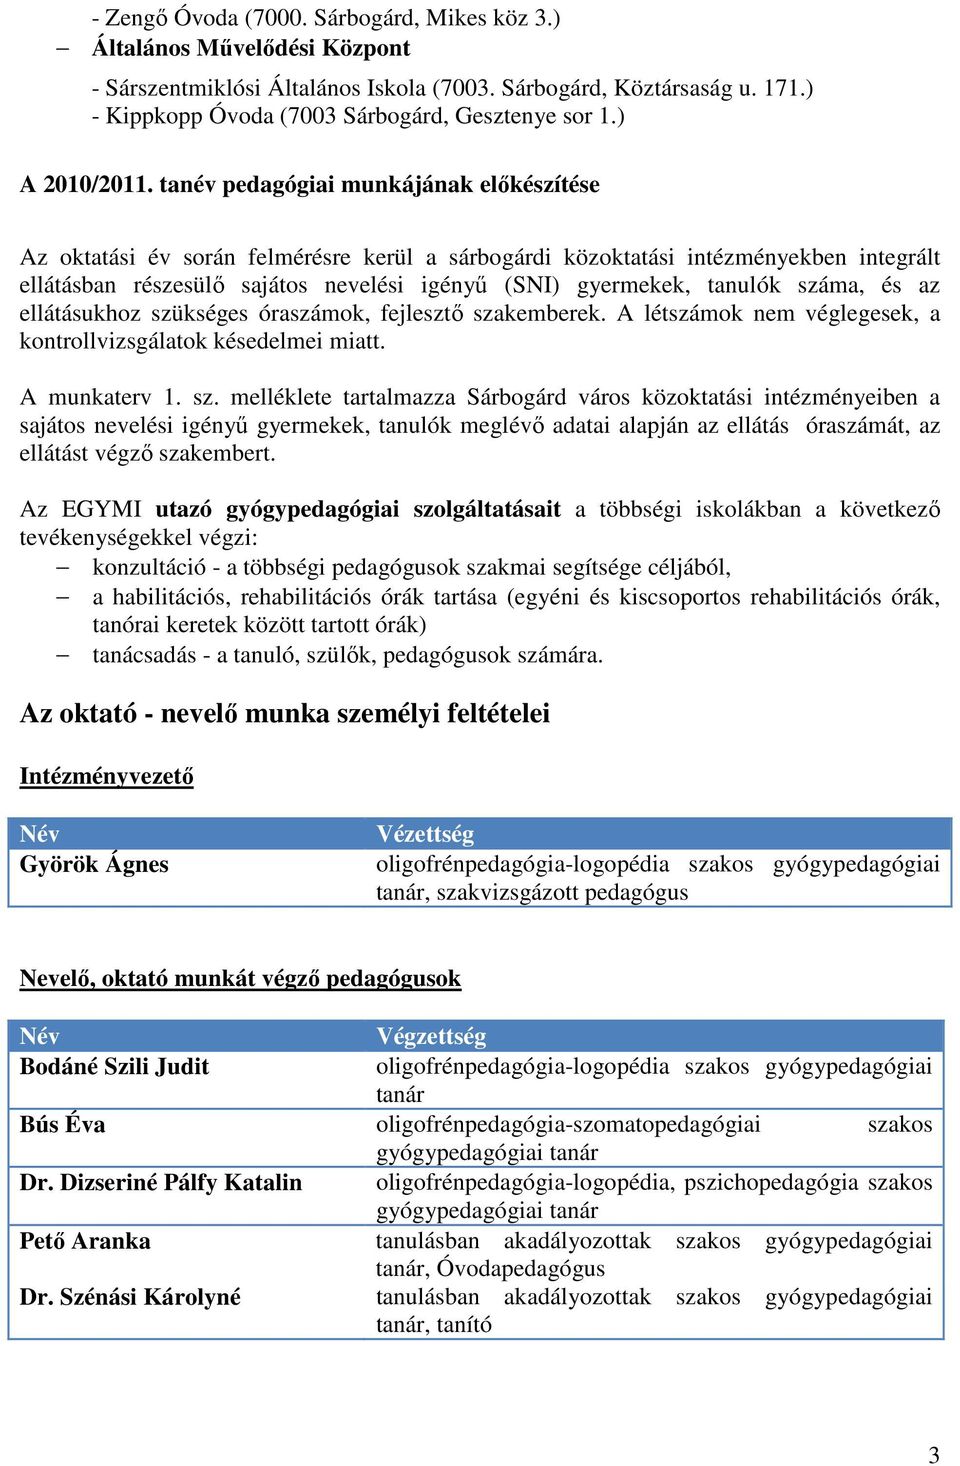 tanév pedagógiai munkájának előkészítése Az oktatási év során felmérésre kerül a sárbogárdi közoktatási intézményekben integrált ellátásban részesülő sajátos nevelési igényű (SNI) gyermekek, tanulók